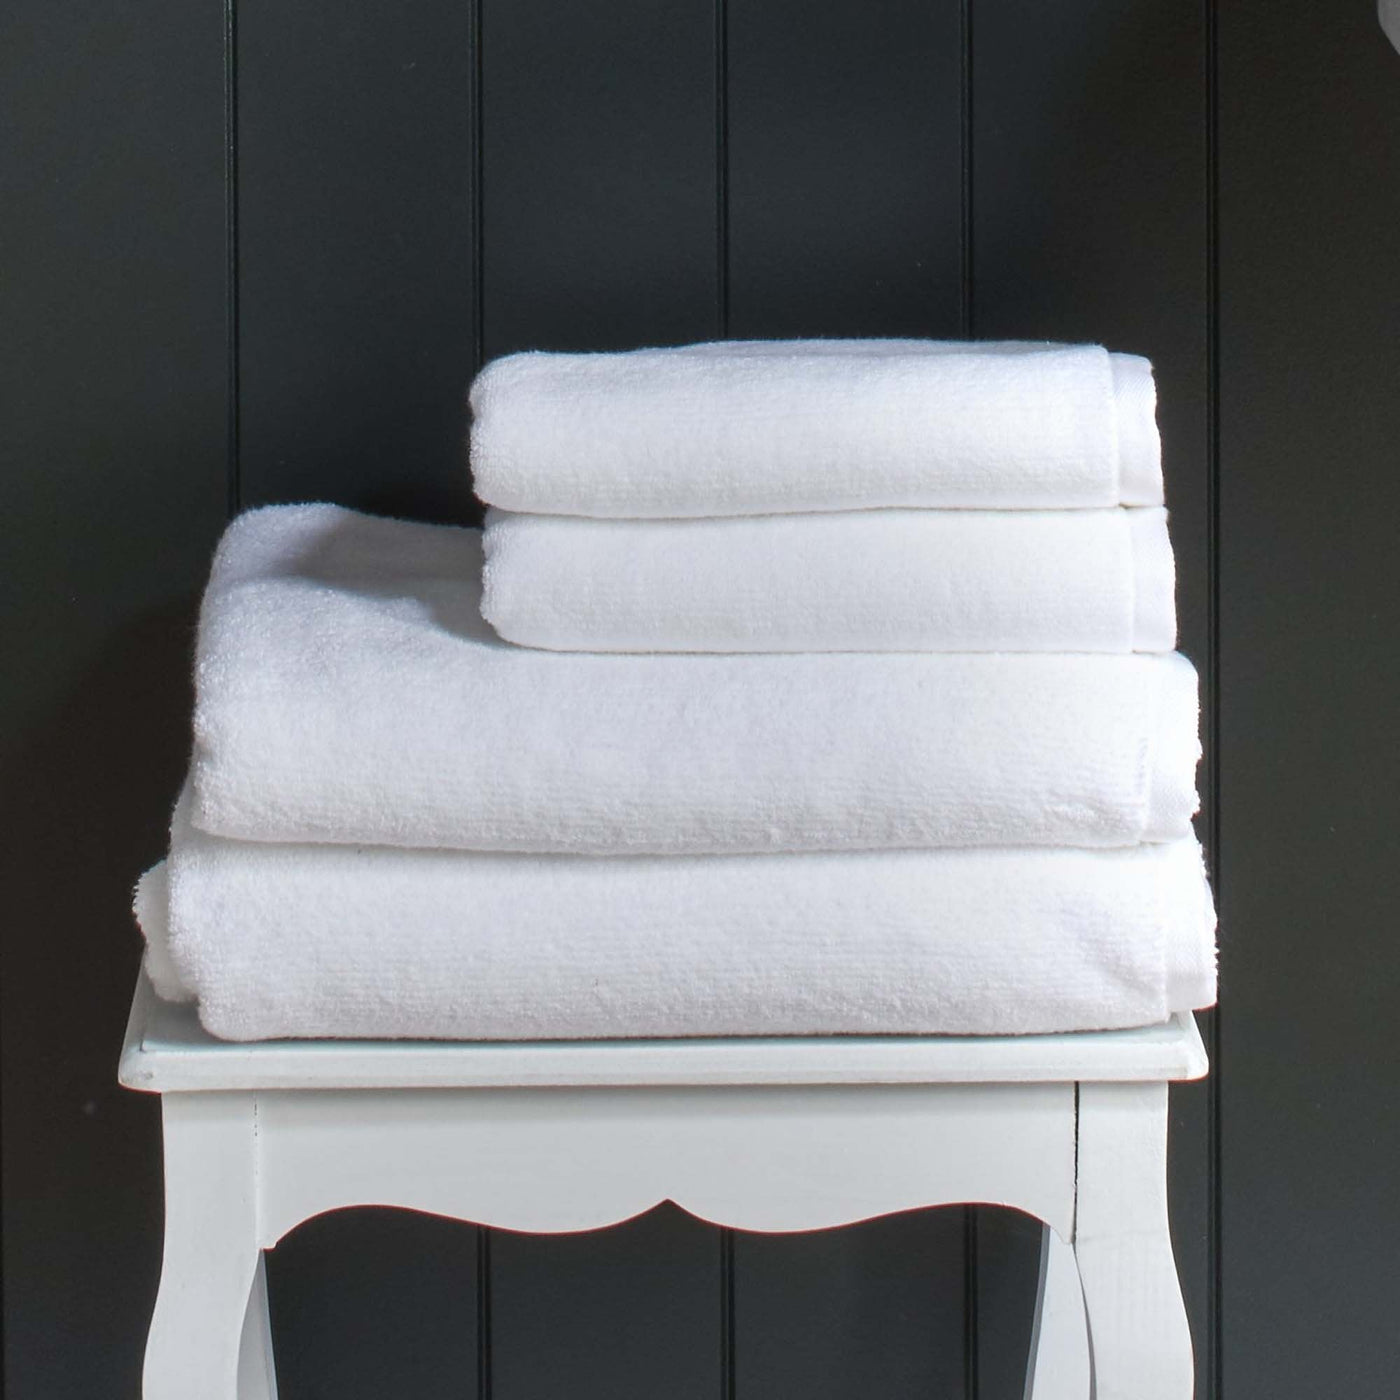 Amalfi 450gsm Spa Towel Collection